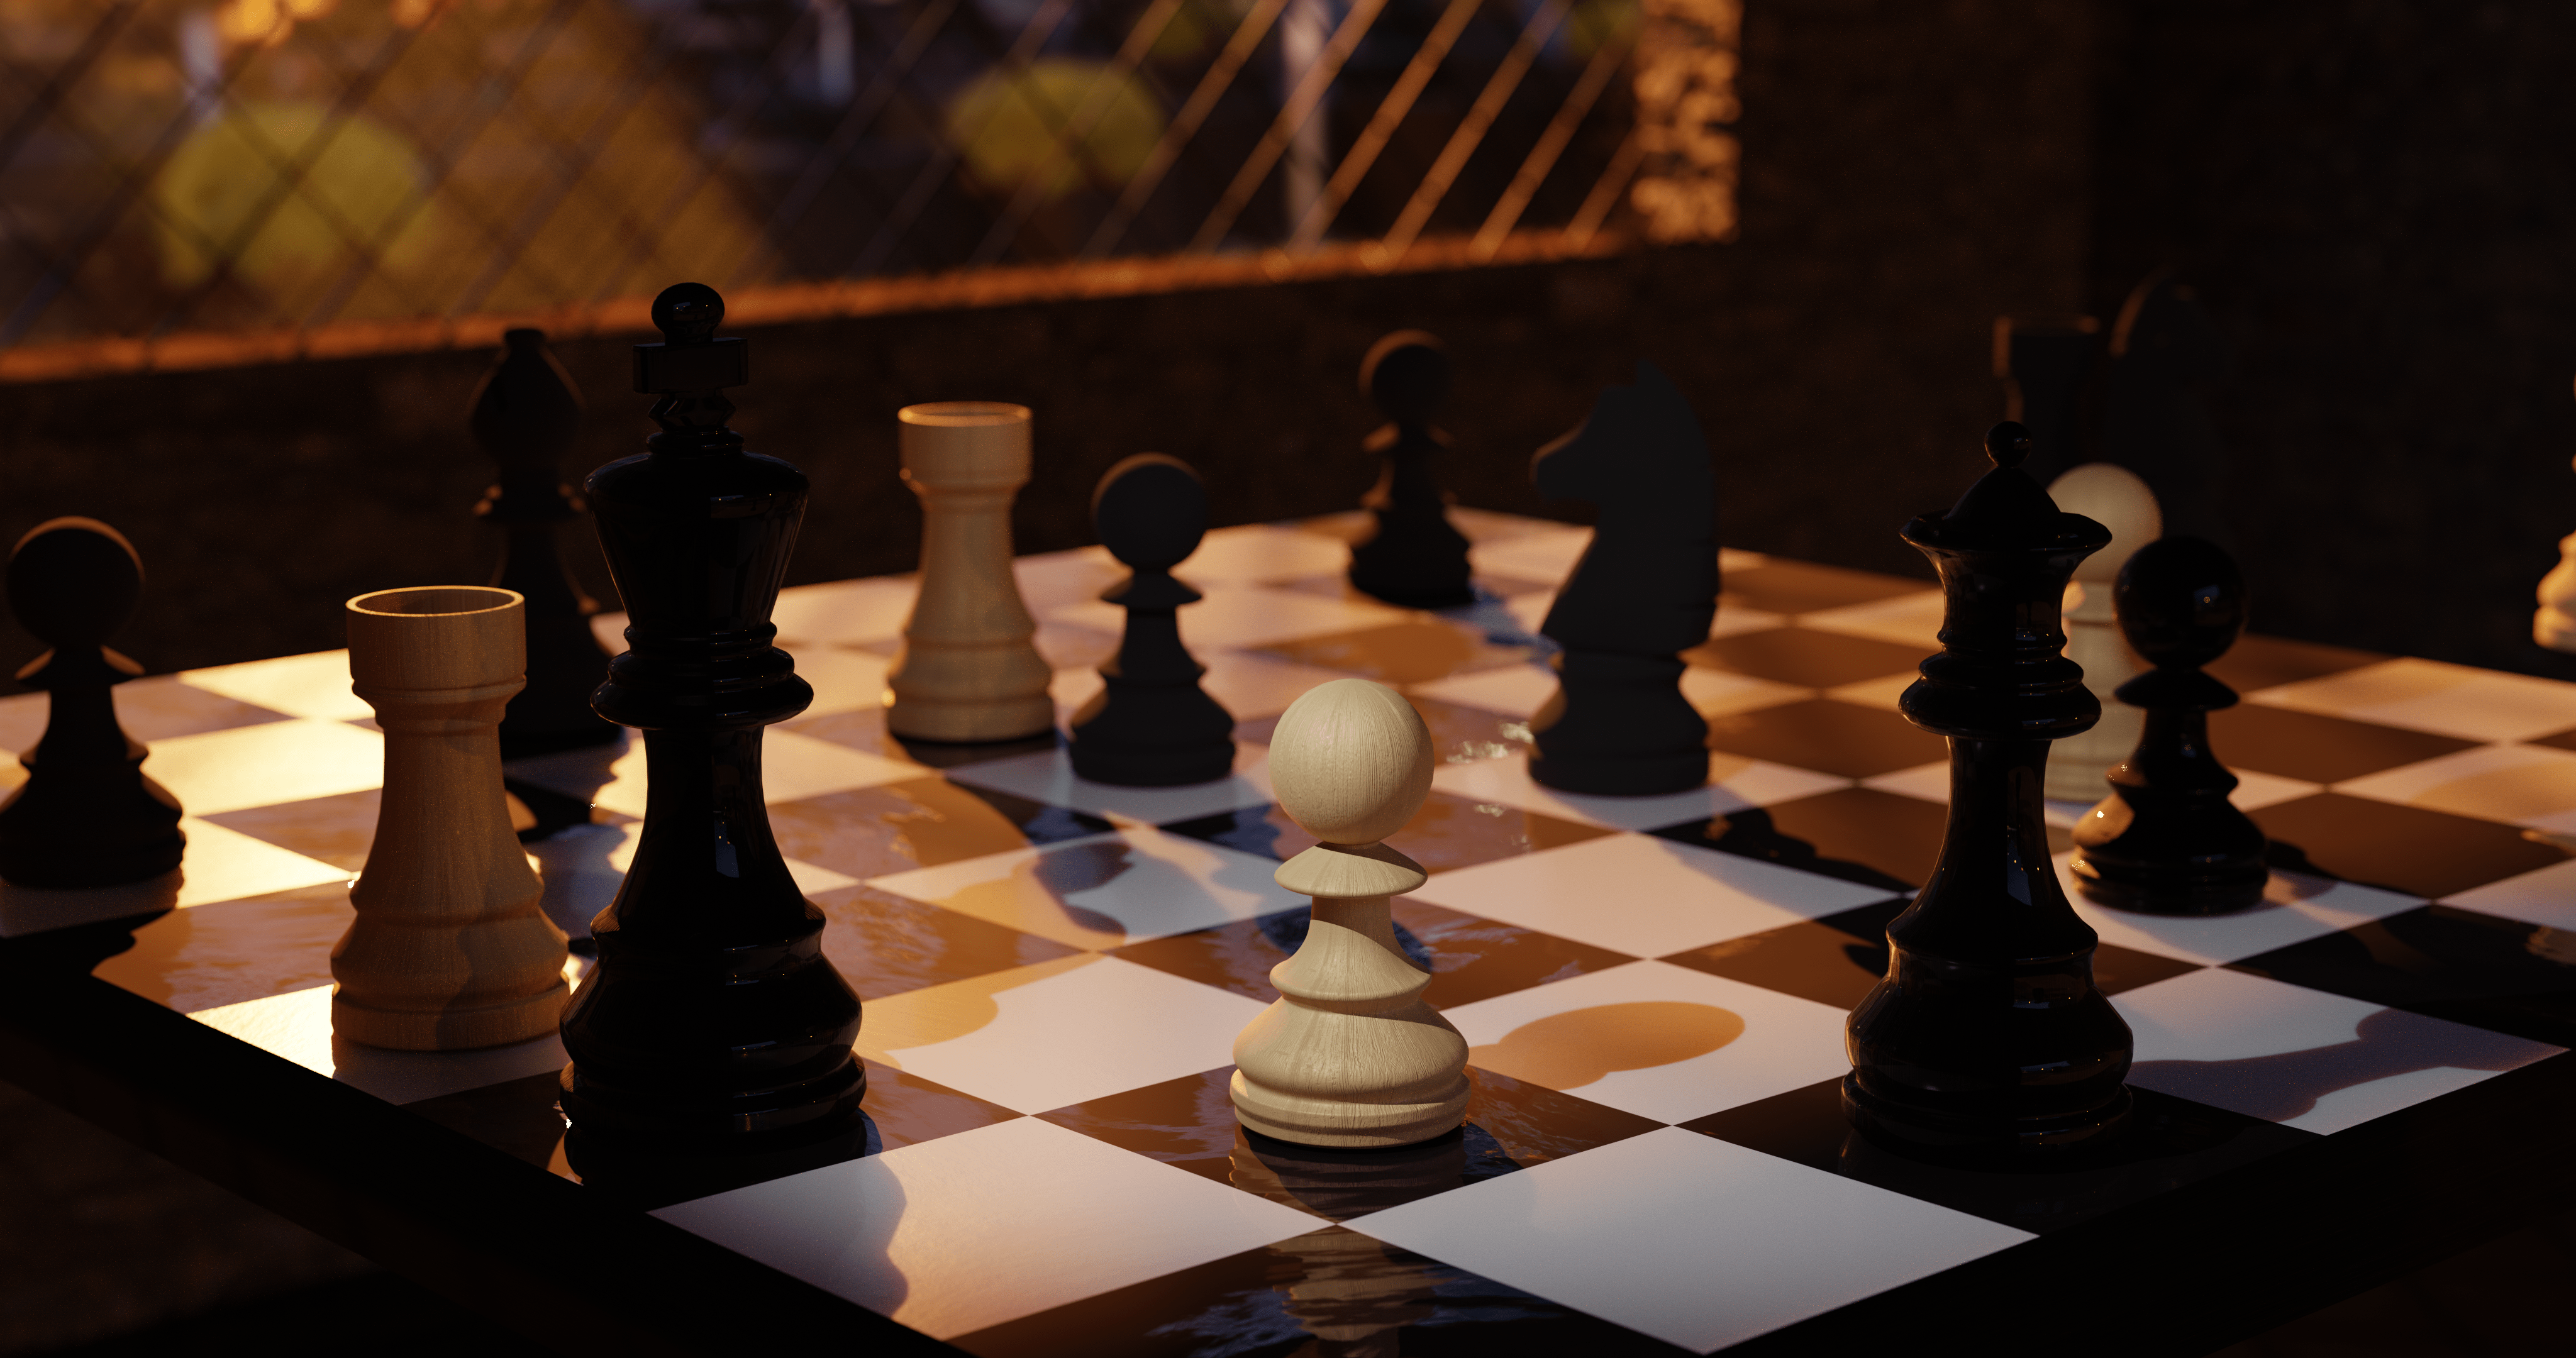 Billede af en detaljeret skakscene med en hvid skakbrik på plads.